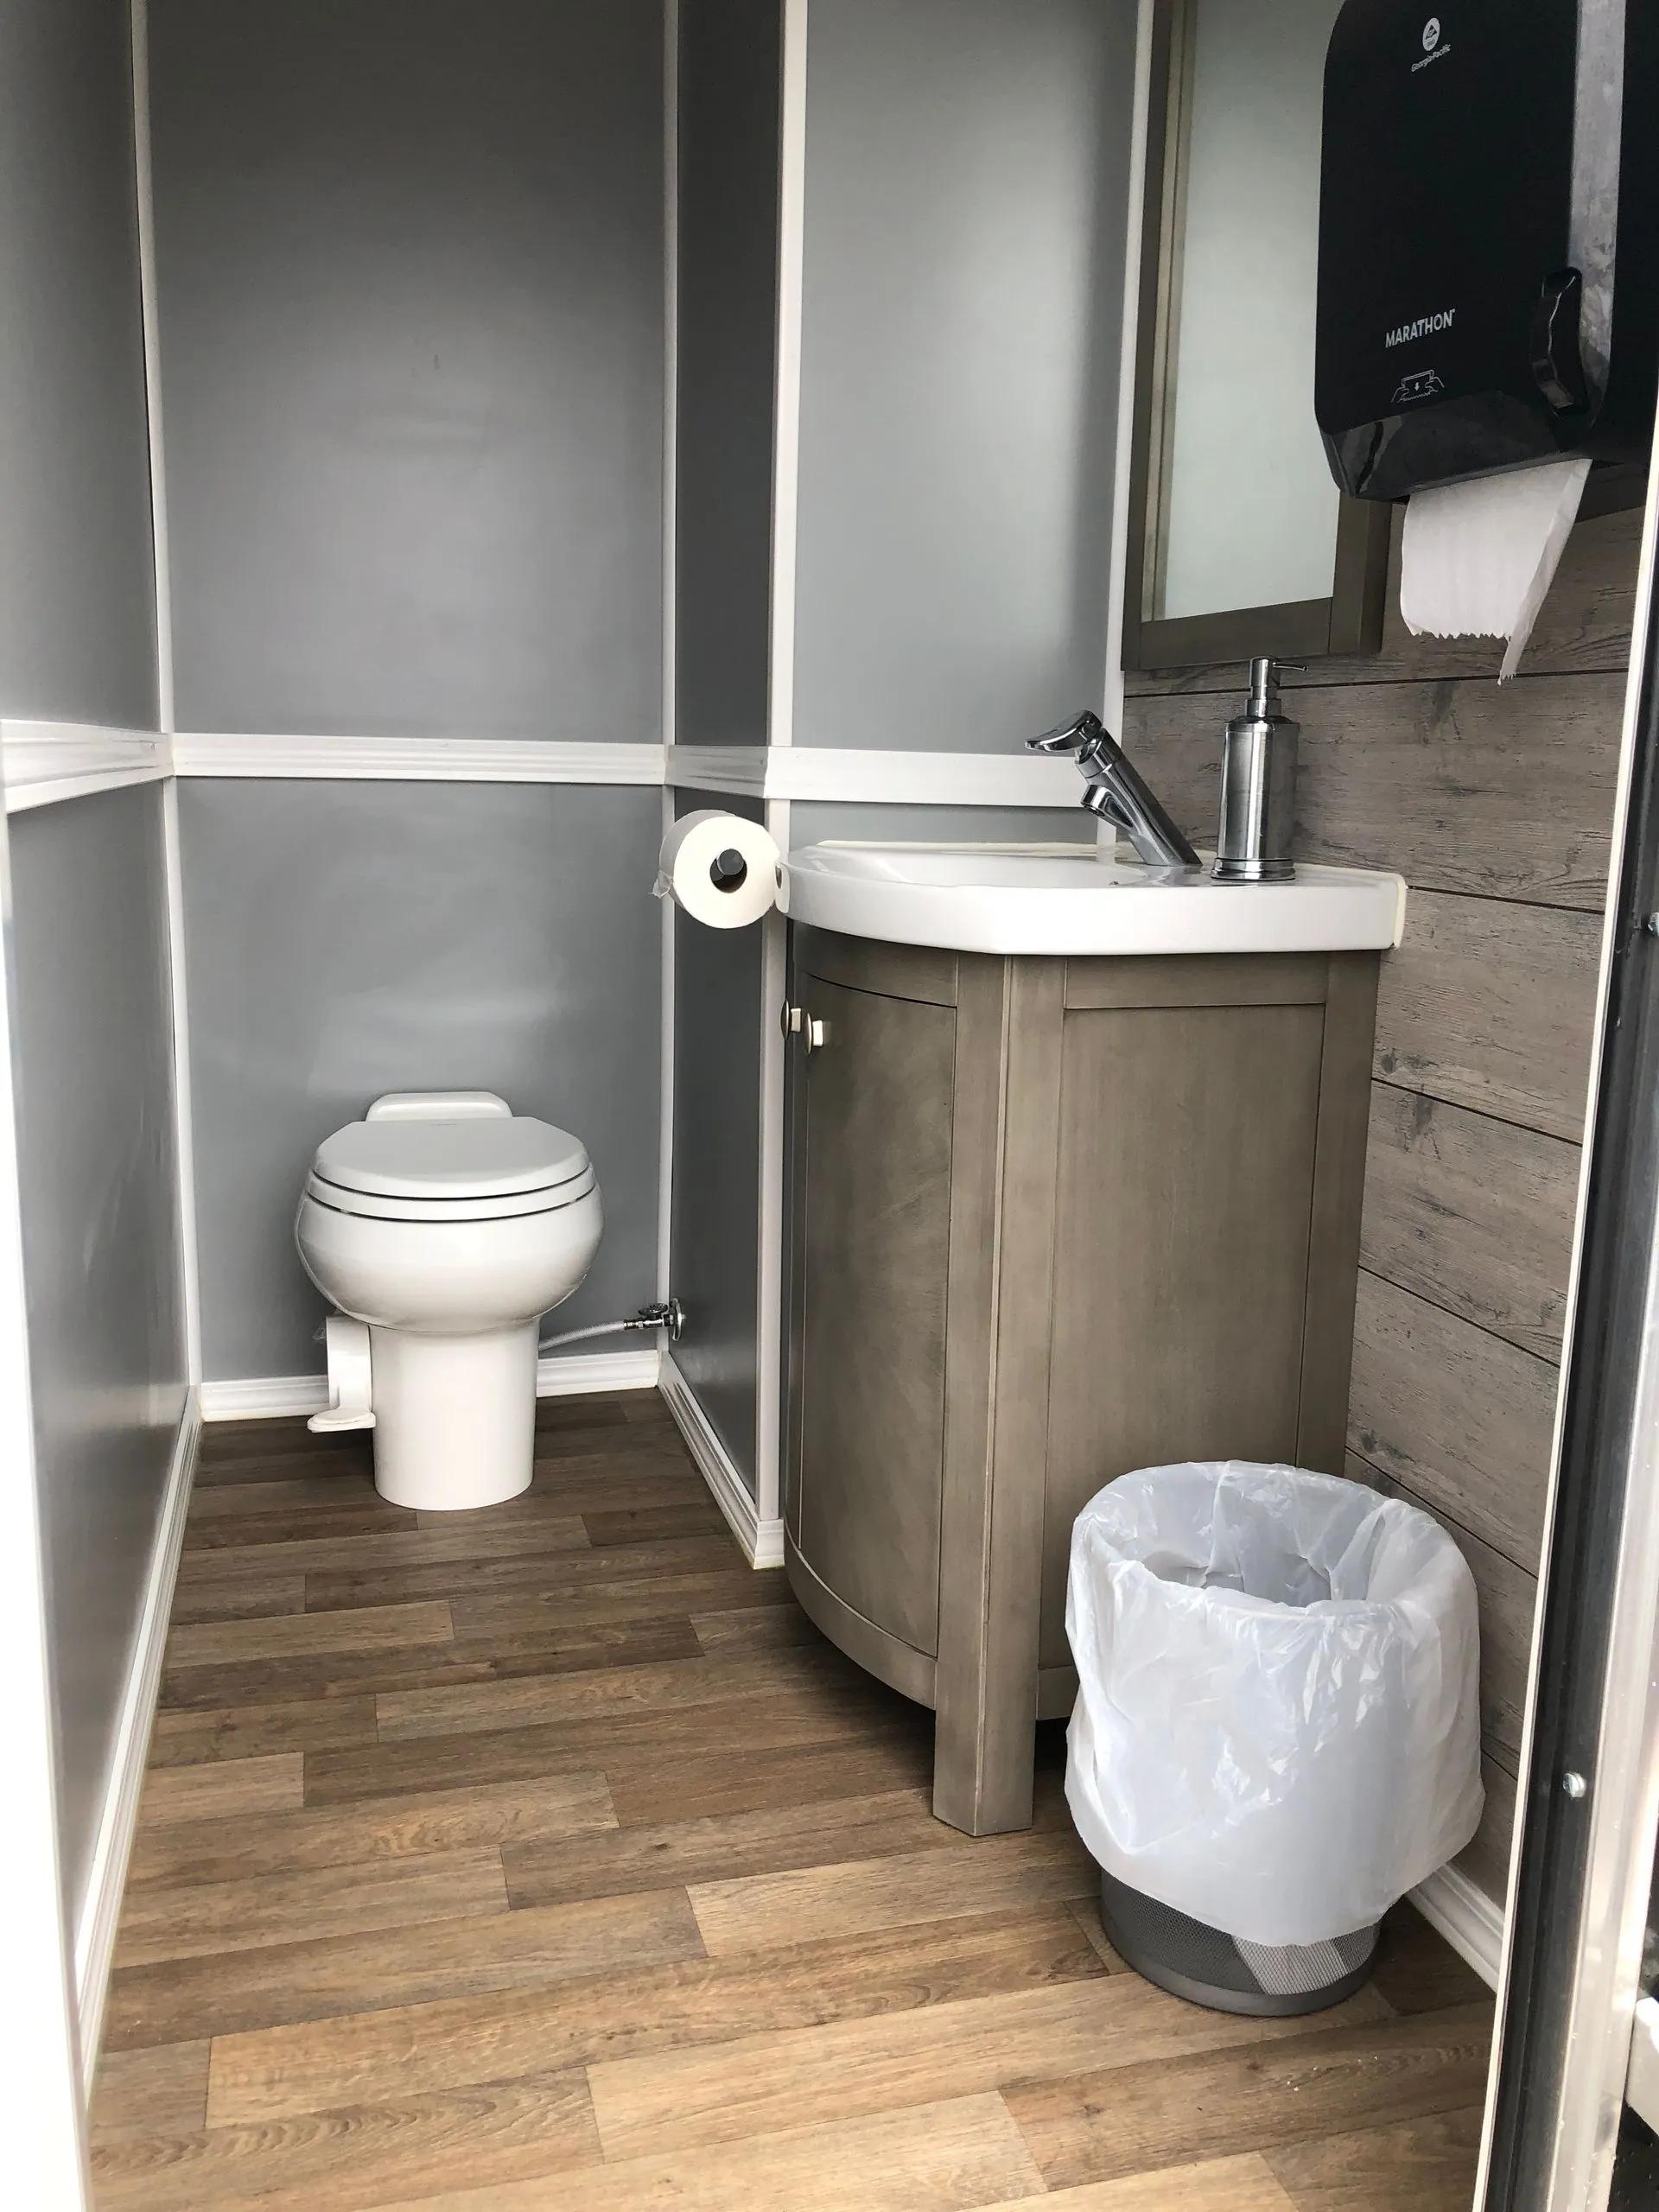 Toilet and sink setup inside finished portable restroom